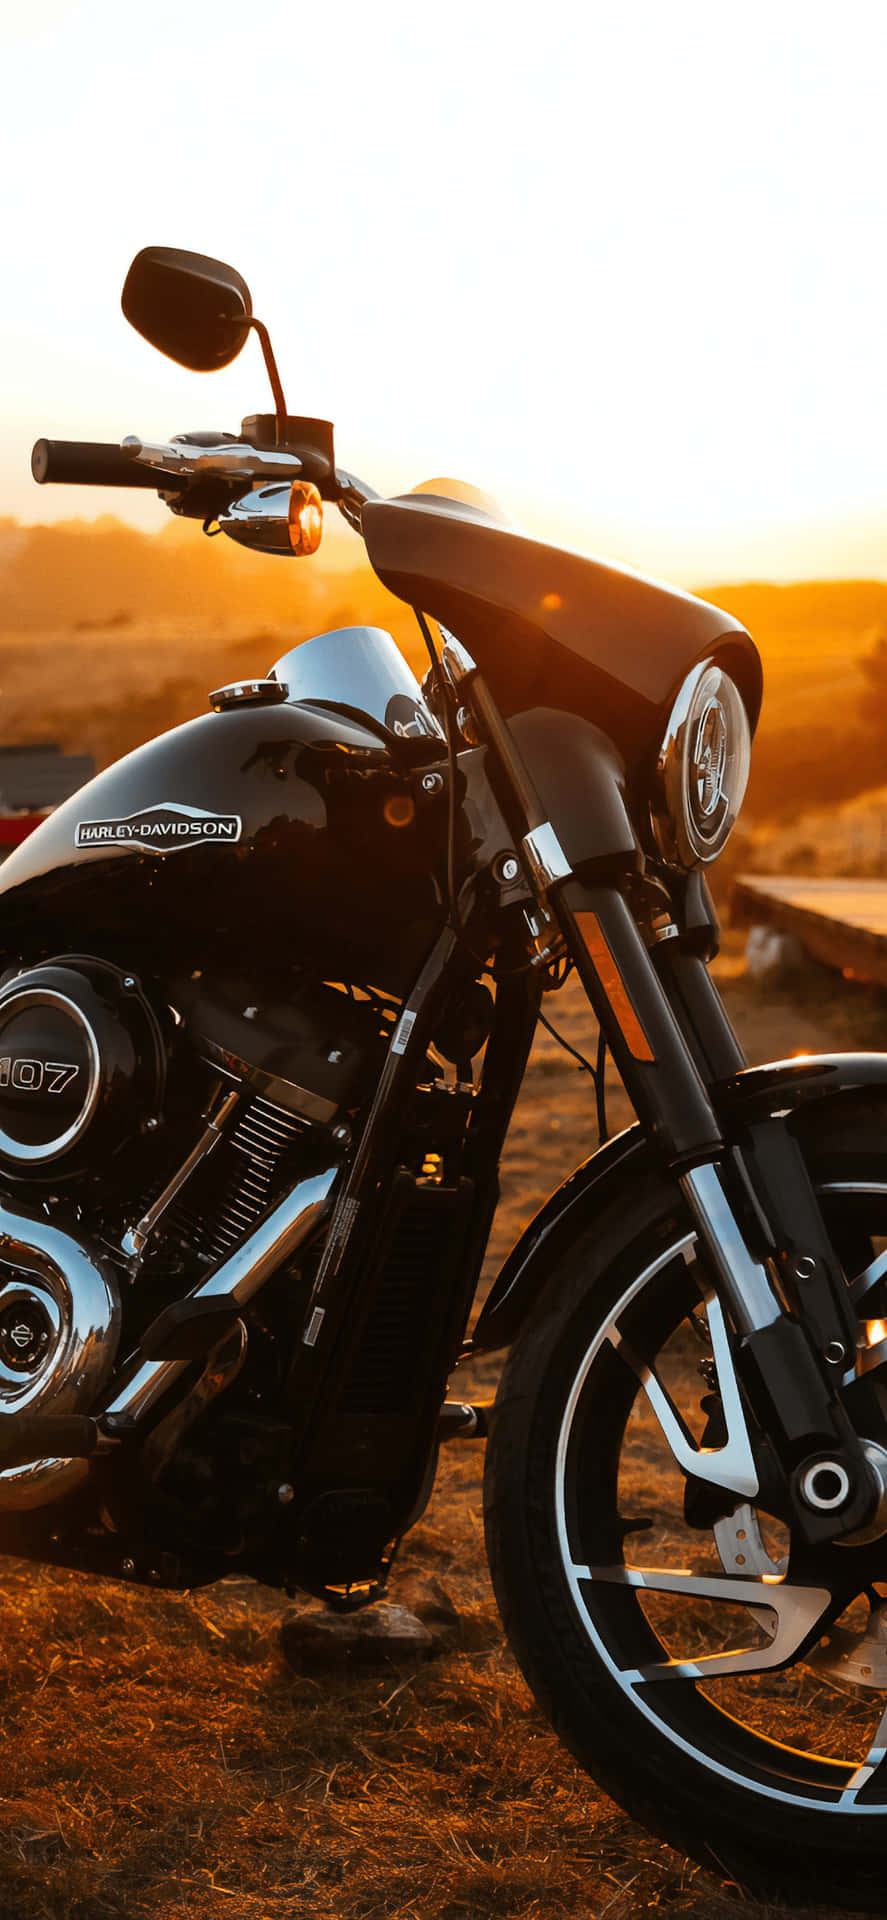 Vivil'esperienza Di Una Potenza Pura Ad Alta Velocità Con L'iconica Harley Davidson Hd. Sfondo